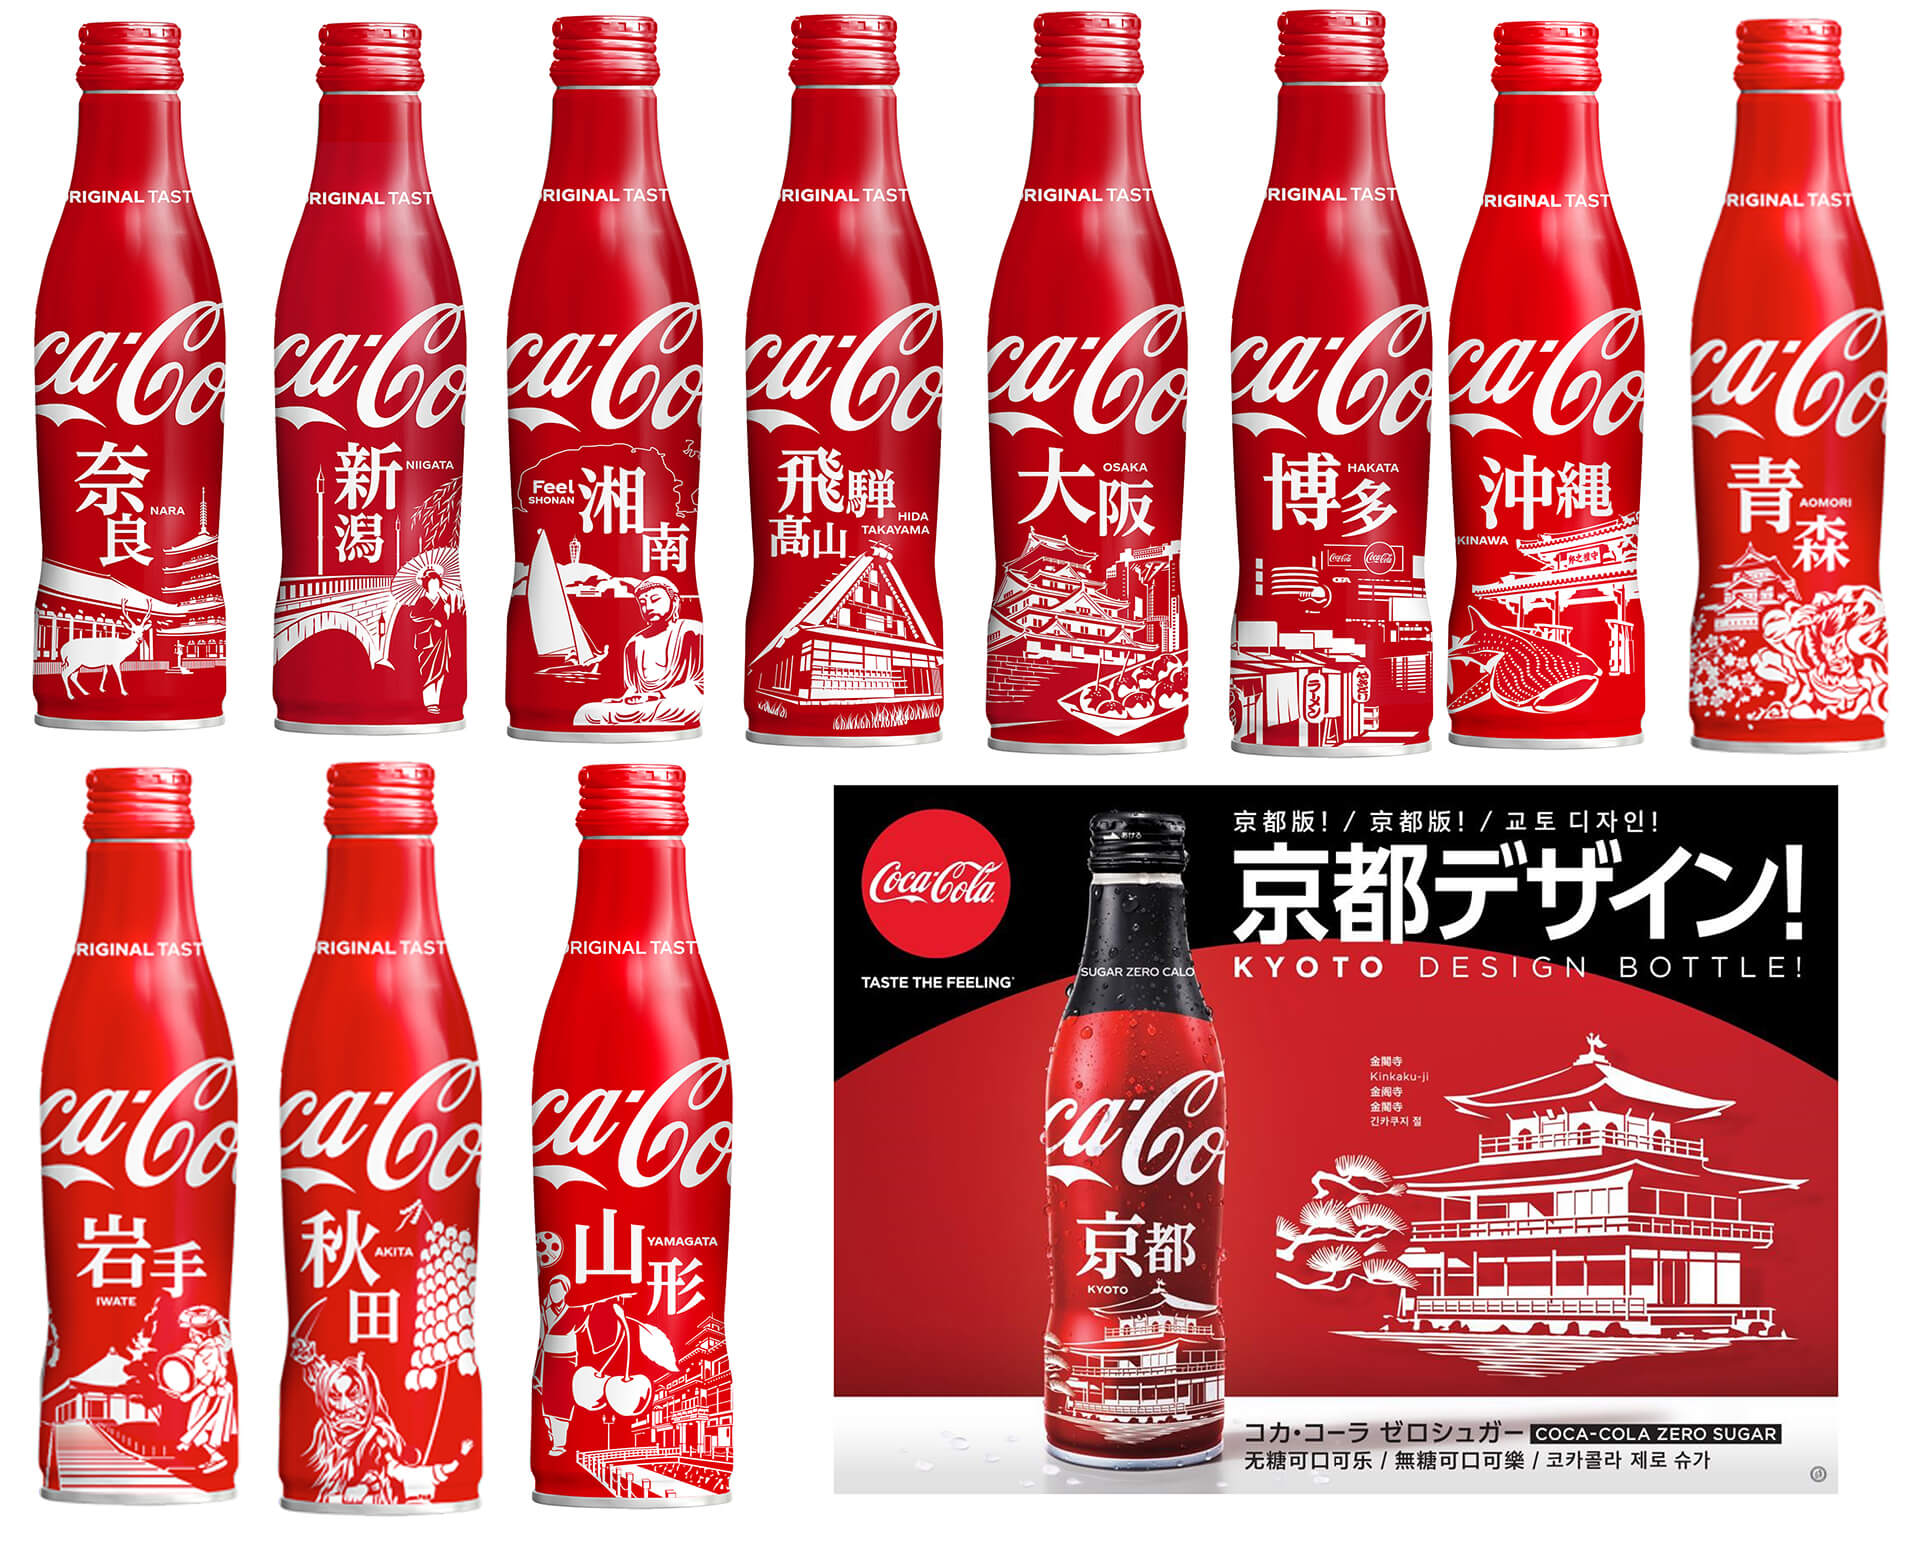 コカ・コーラ 限定スリムボトル、続々拡大中! | 関東のお出かけ情報 ...